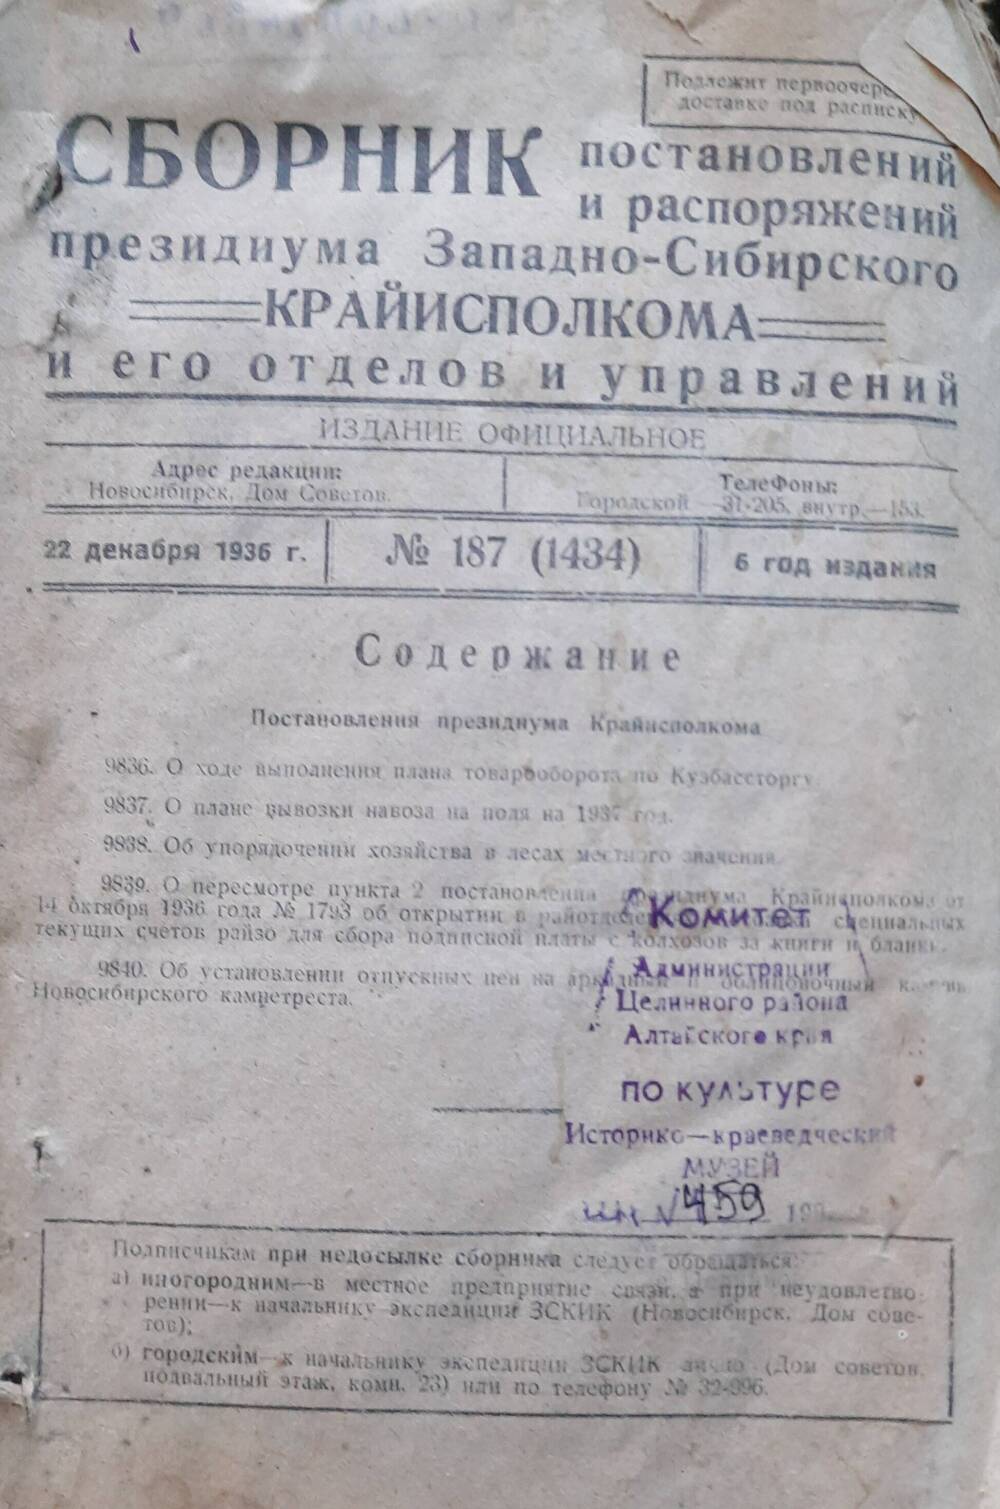 Сборник постановлений президиума Западно-Сибирского крайисполкома, его управлений и отделов 1936 г. с № 2 по №187